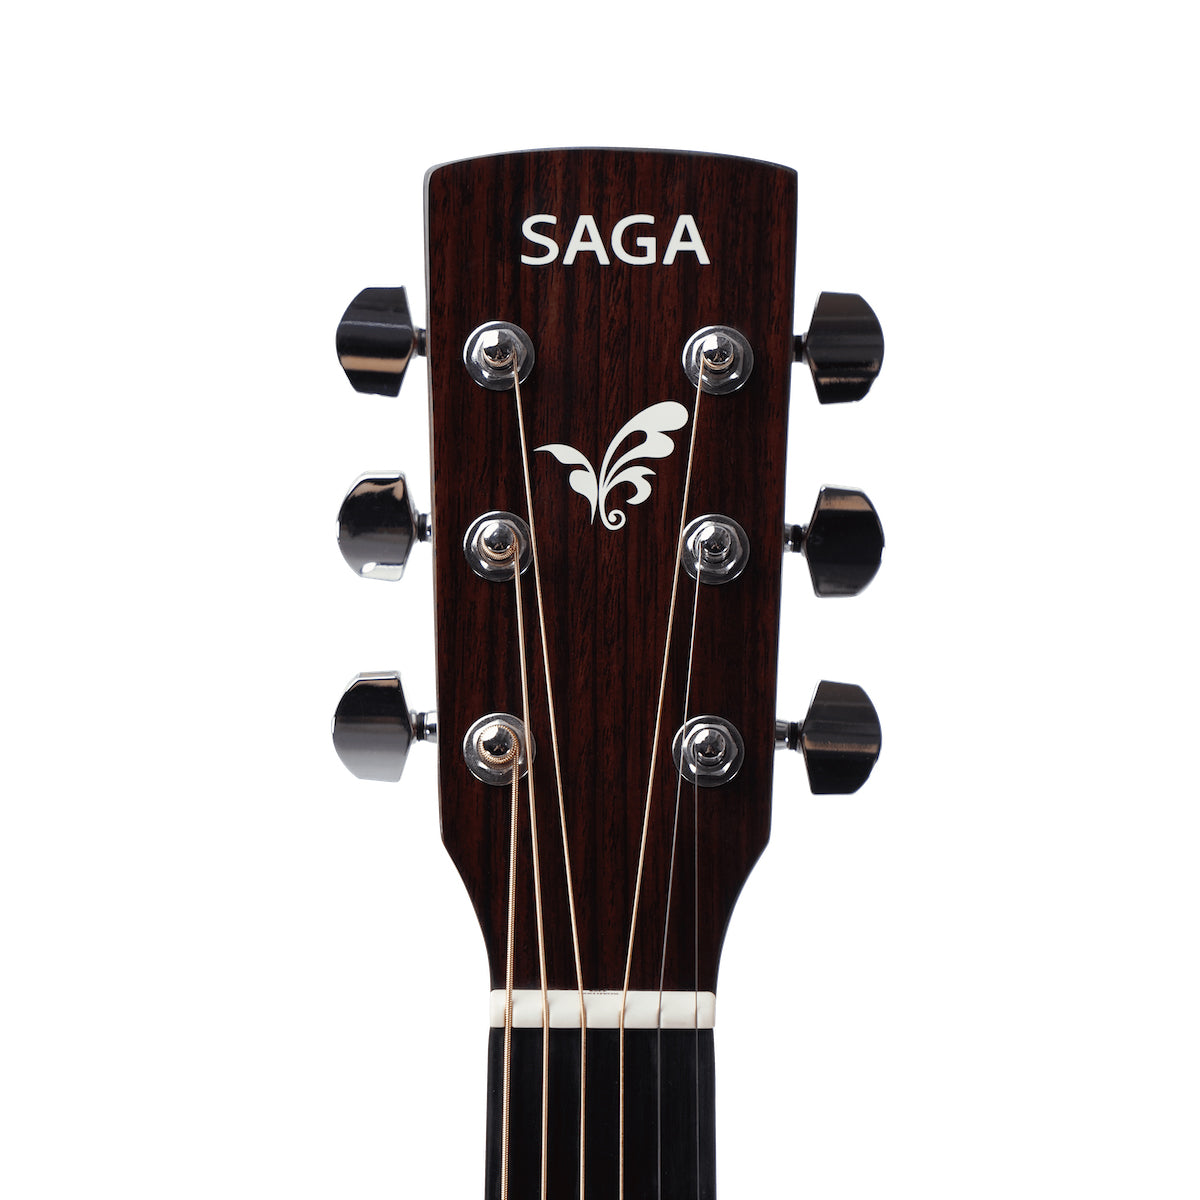 Đàn Guitar Acoustic Saga SF700GCE - Việt Music